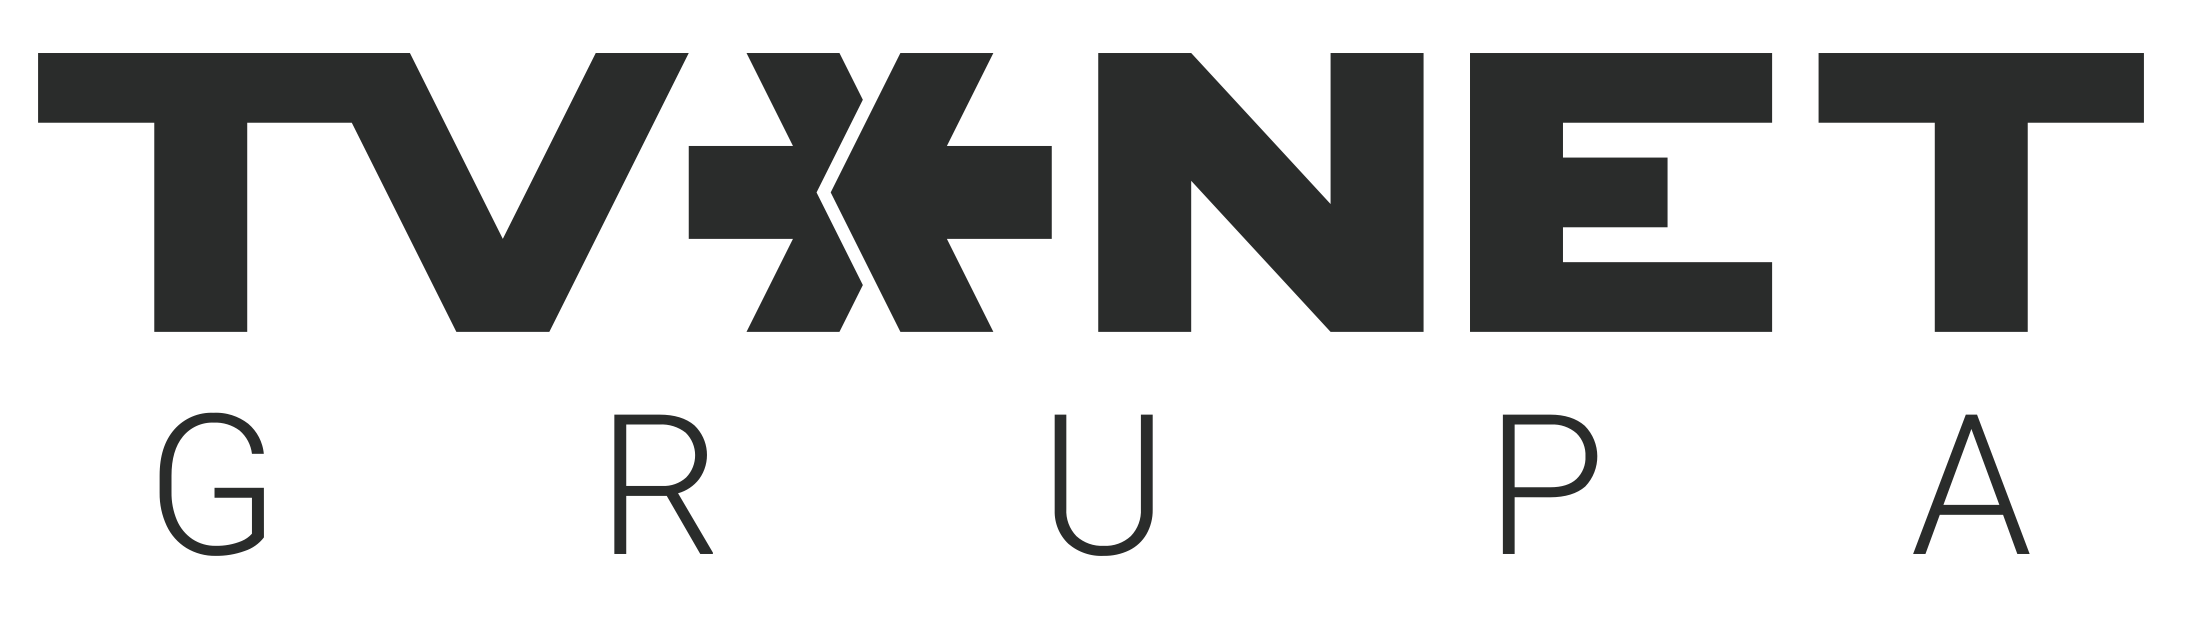 TVNET logo